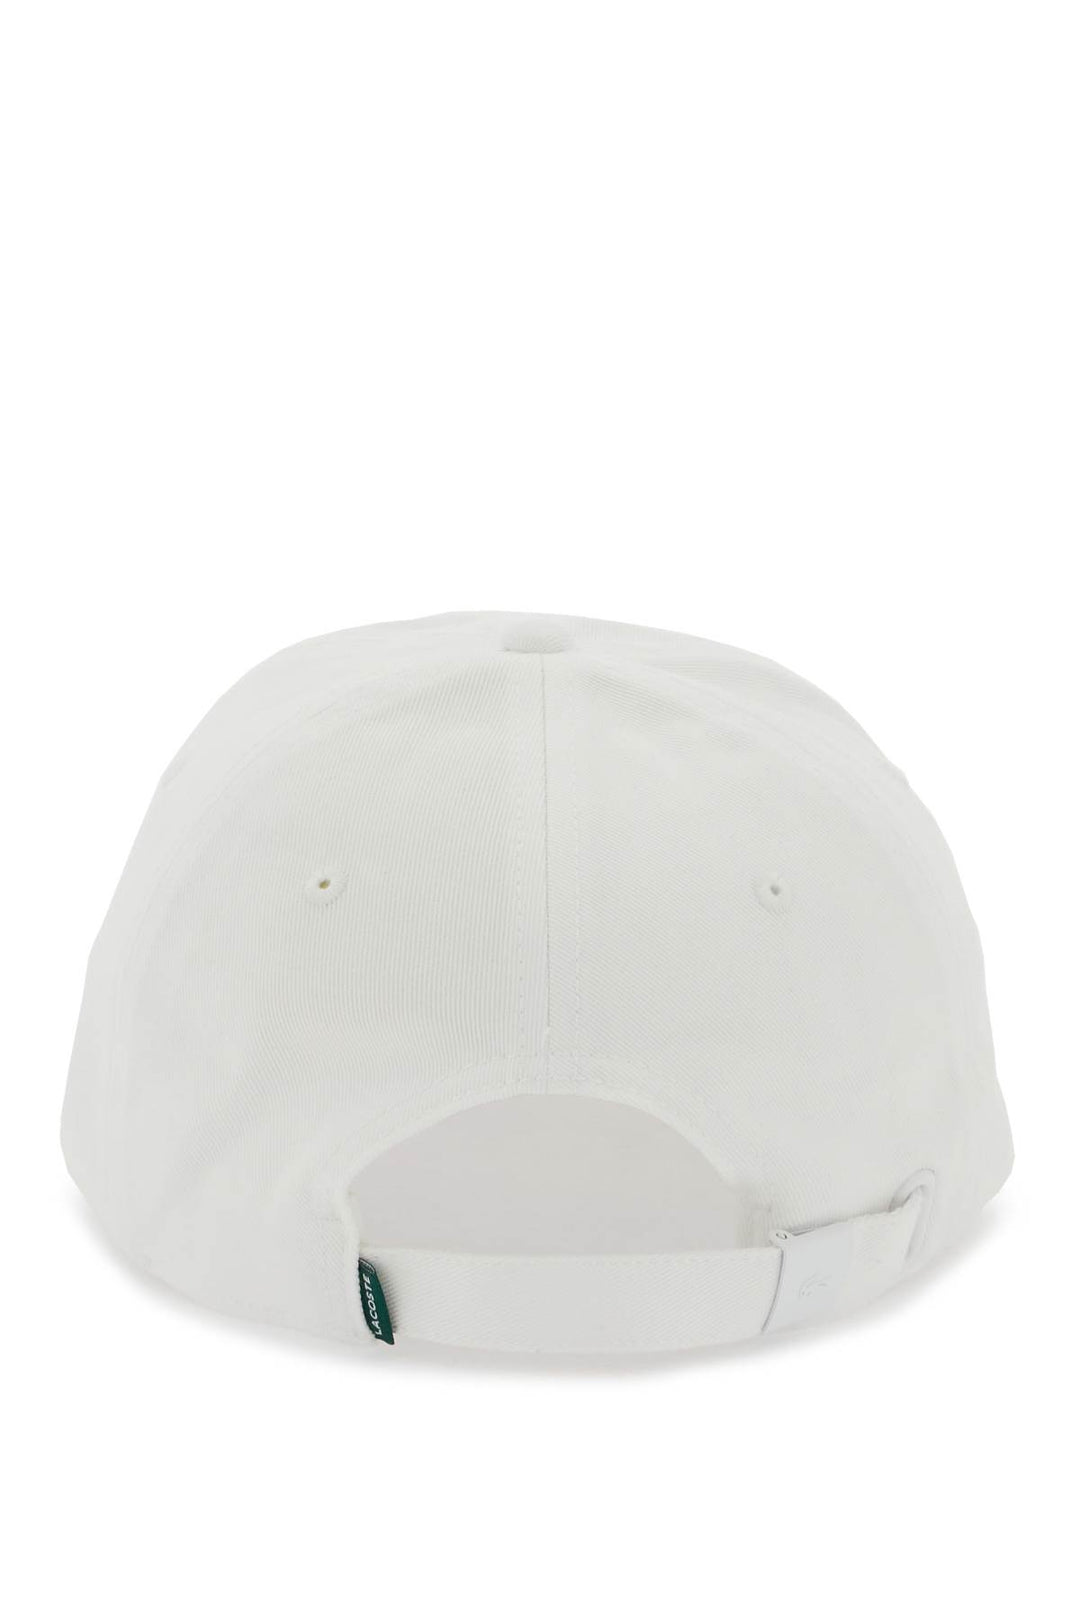 Cappello Baseball Con Patch Logo - Lacoste - Uomo